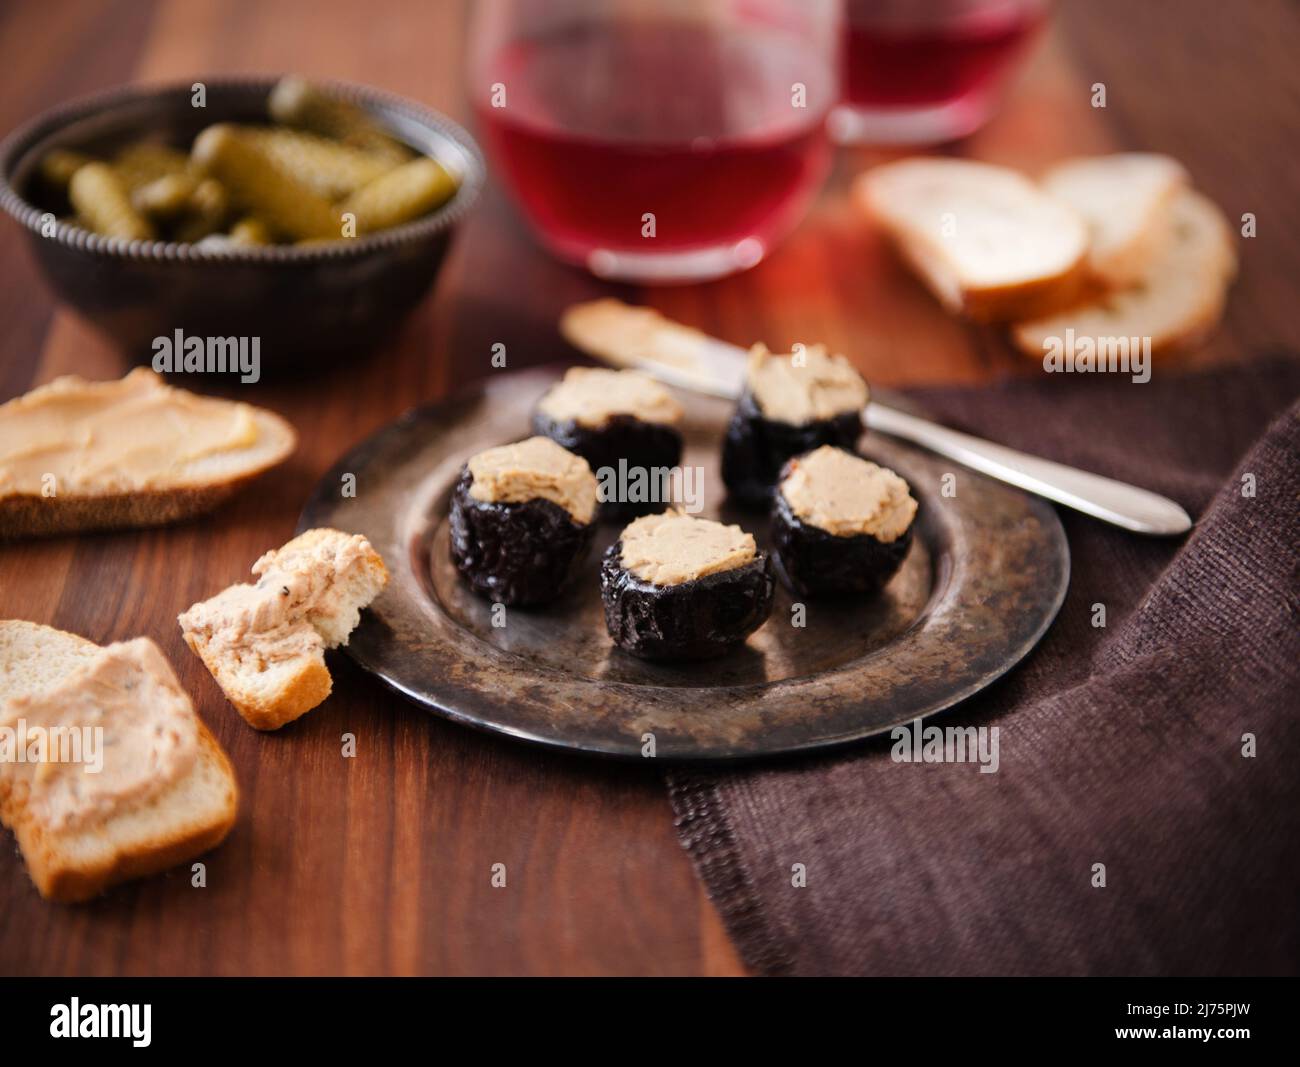 Pruneaux farcis avec foie gras sur un plat métallique; pain et foie gras; cornichons; vin Banque D'Images